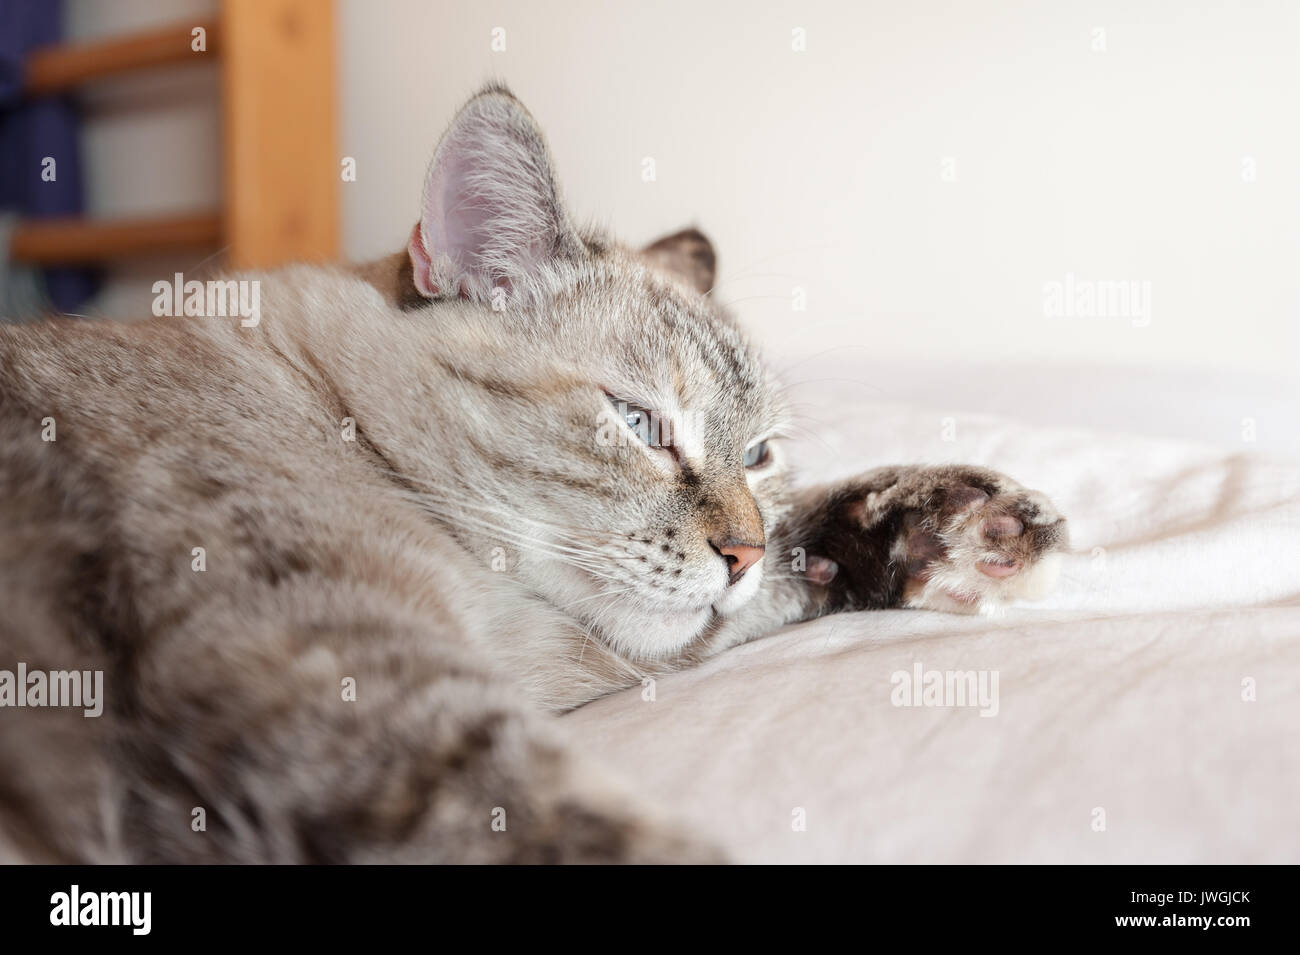 Ritratto di tabby cat su brown plaid. Gatto europeo. Foto Stock